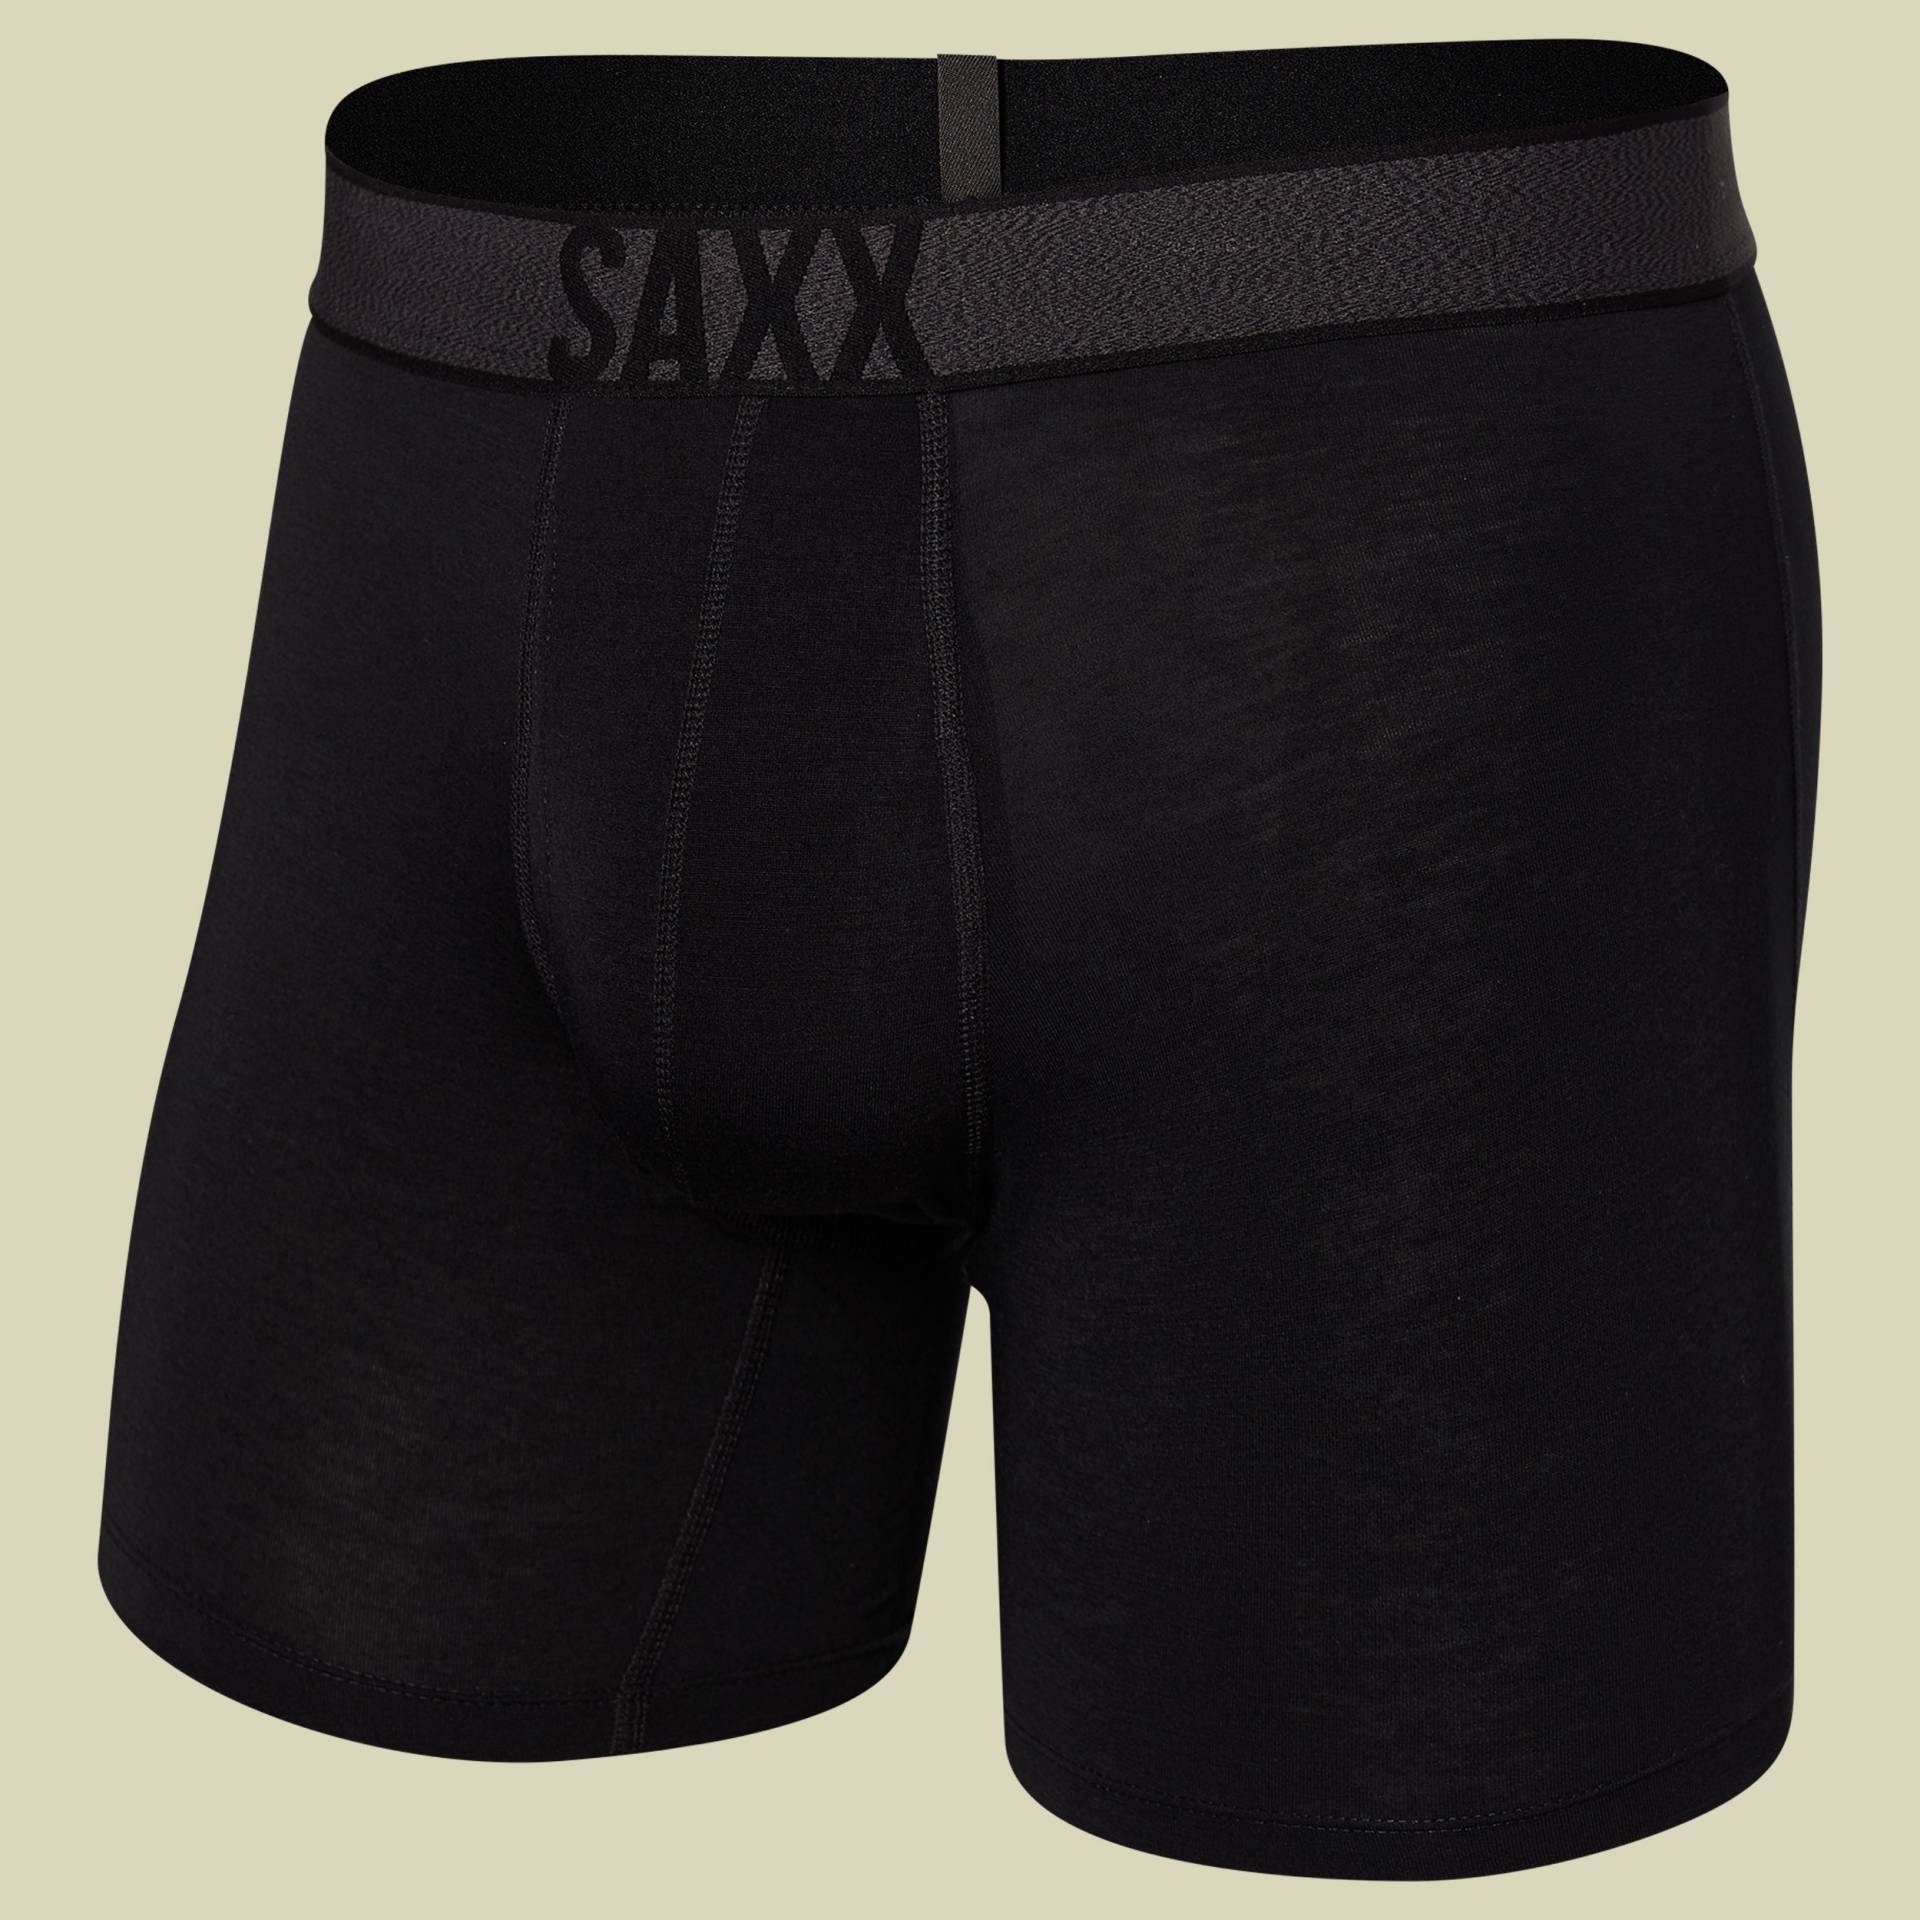 Roast Master Mid-Weight Boxer Brief Fly Men Größe L  Farbe black von Saxx